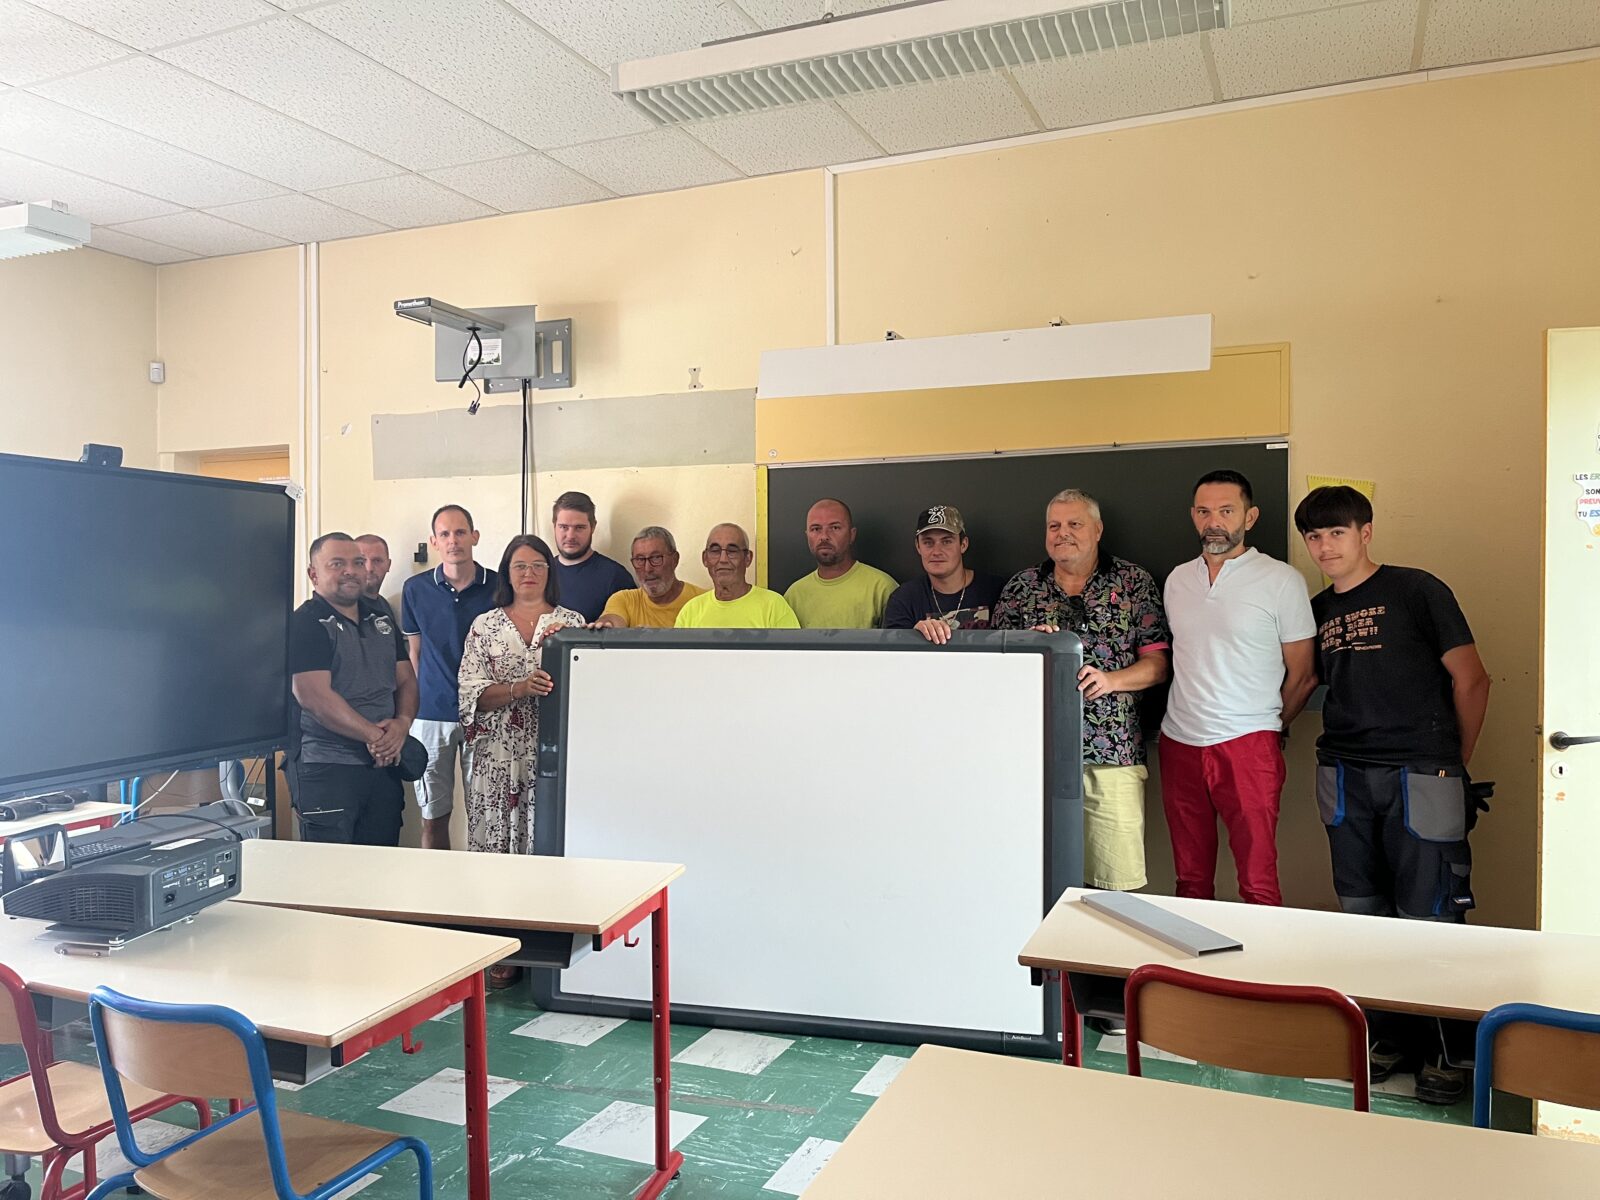 BAGNOLS-SUR-CEZE : La Ville a offert des Tableaux Blancs Interactifs aux mairies du Gard rhodanien